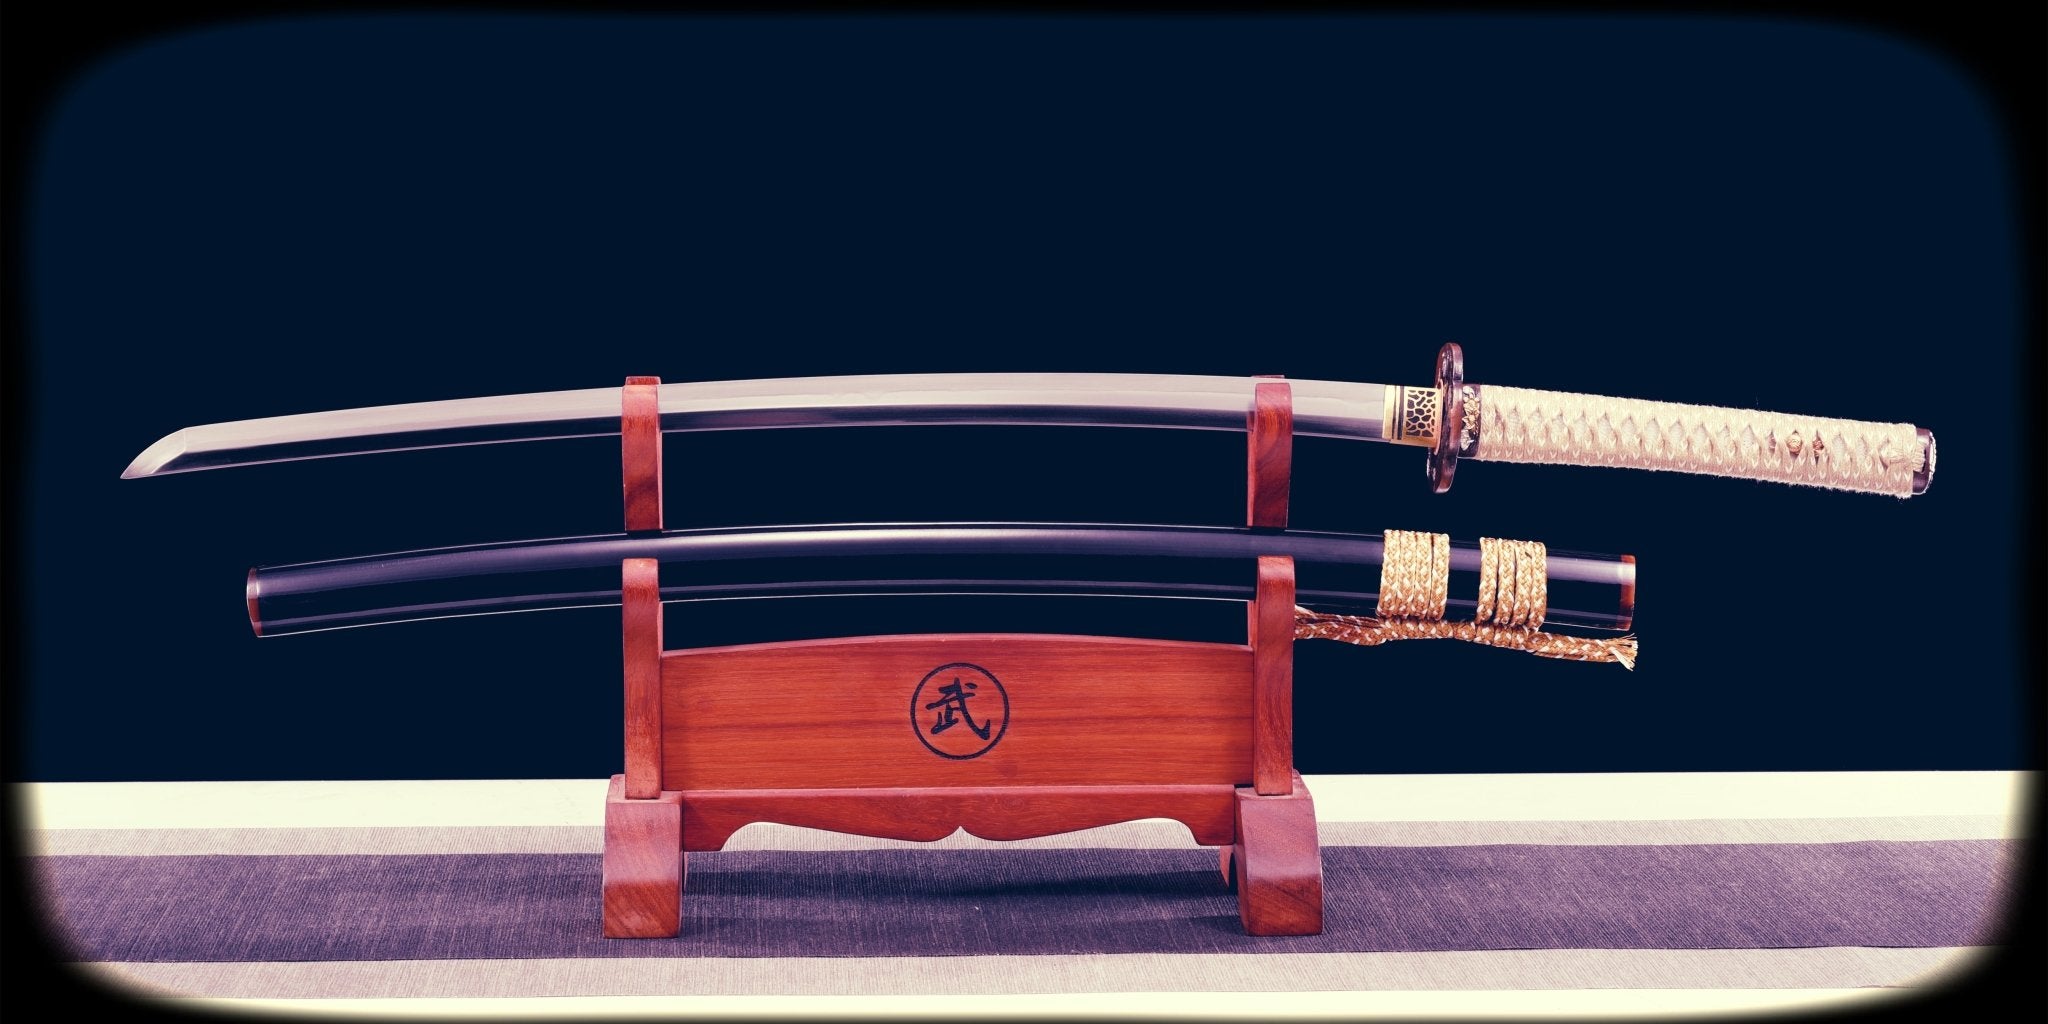 Iai-sword-Muramasa